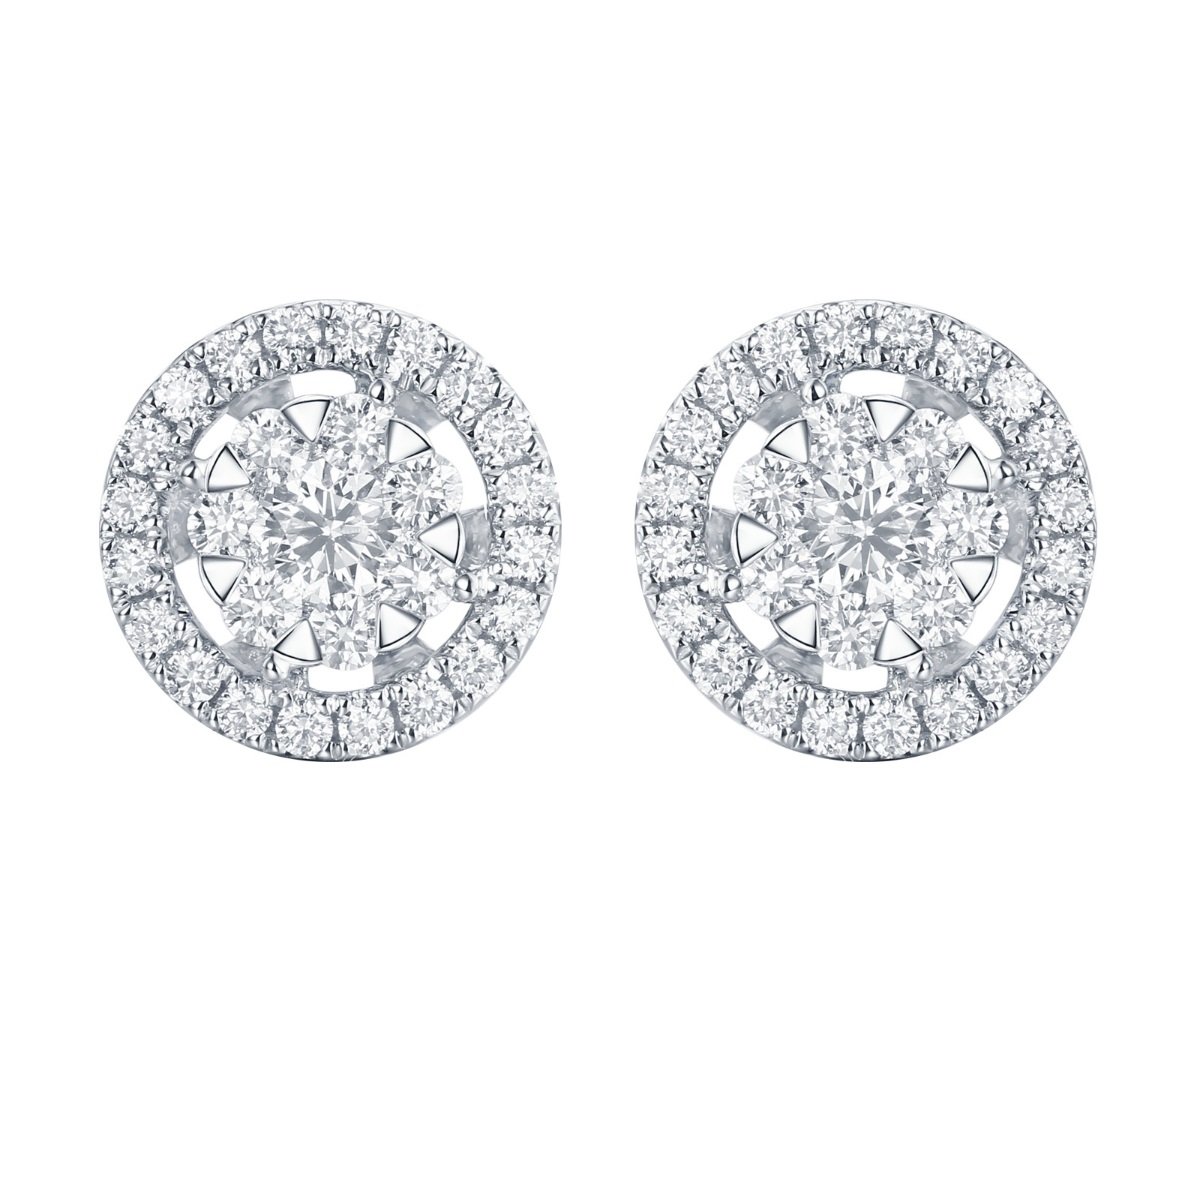 E36372WHT – 18K White Gold Diamond Earring, 0.76 TCW